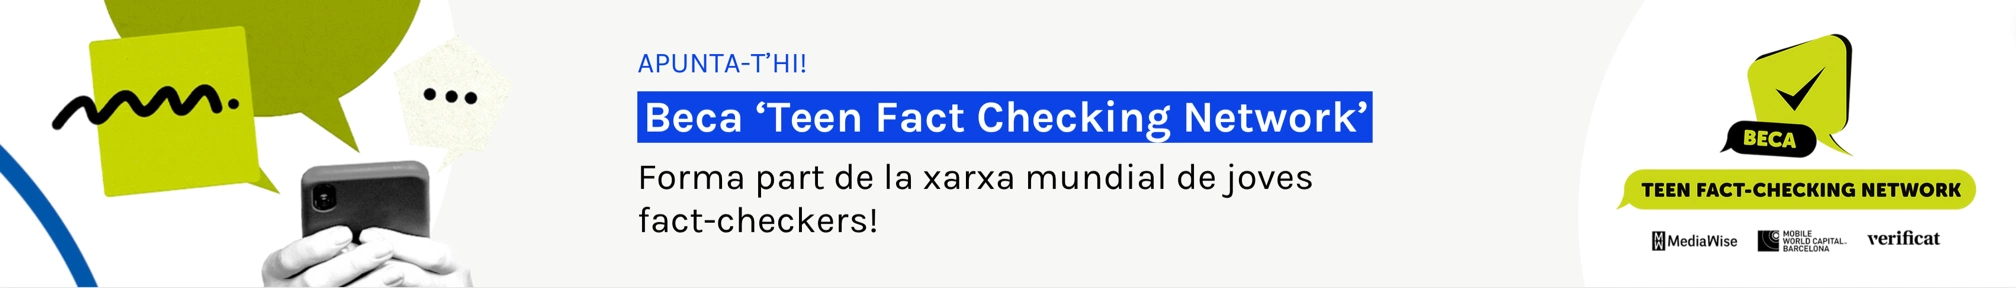 Beca"Teen fact Checking Network" - Apunta-t'hi!